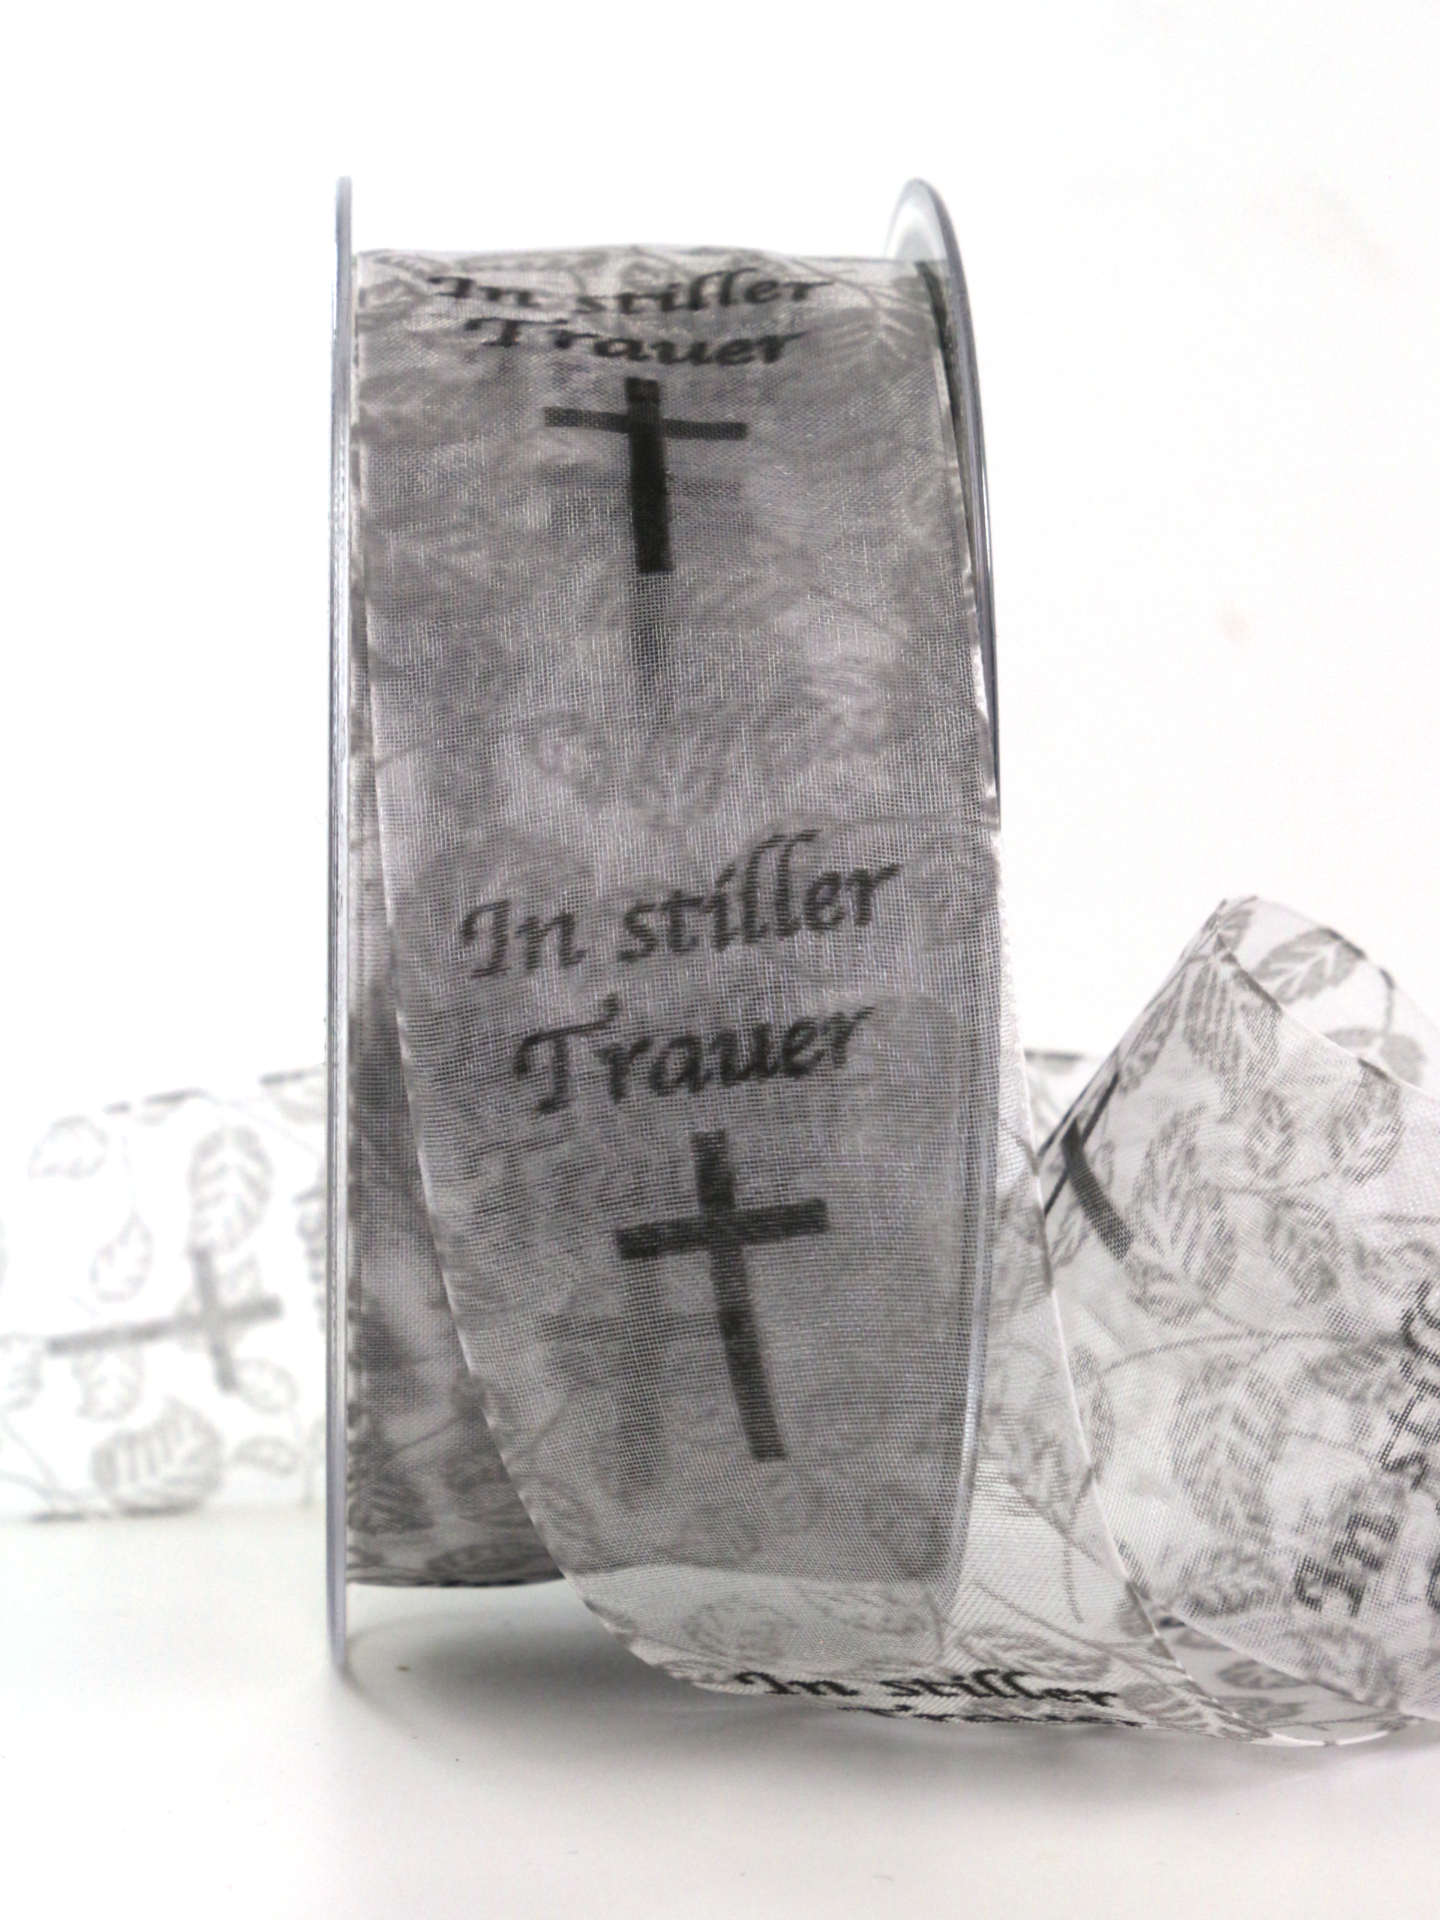 Trauerflor In stiller Trauer, grau, 40 mm breit, 20 m Rolle - trauerflor, trauerband